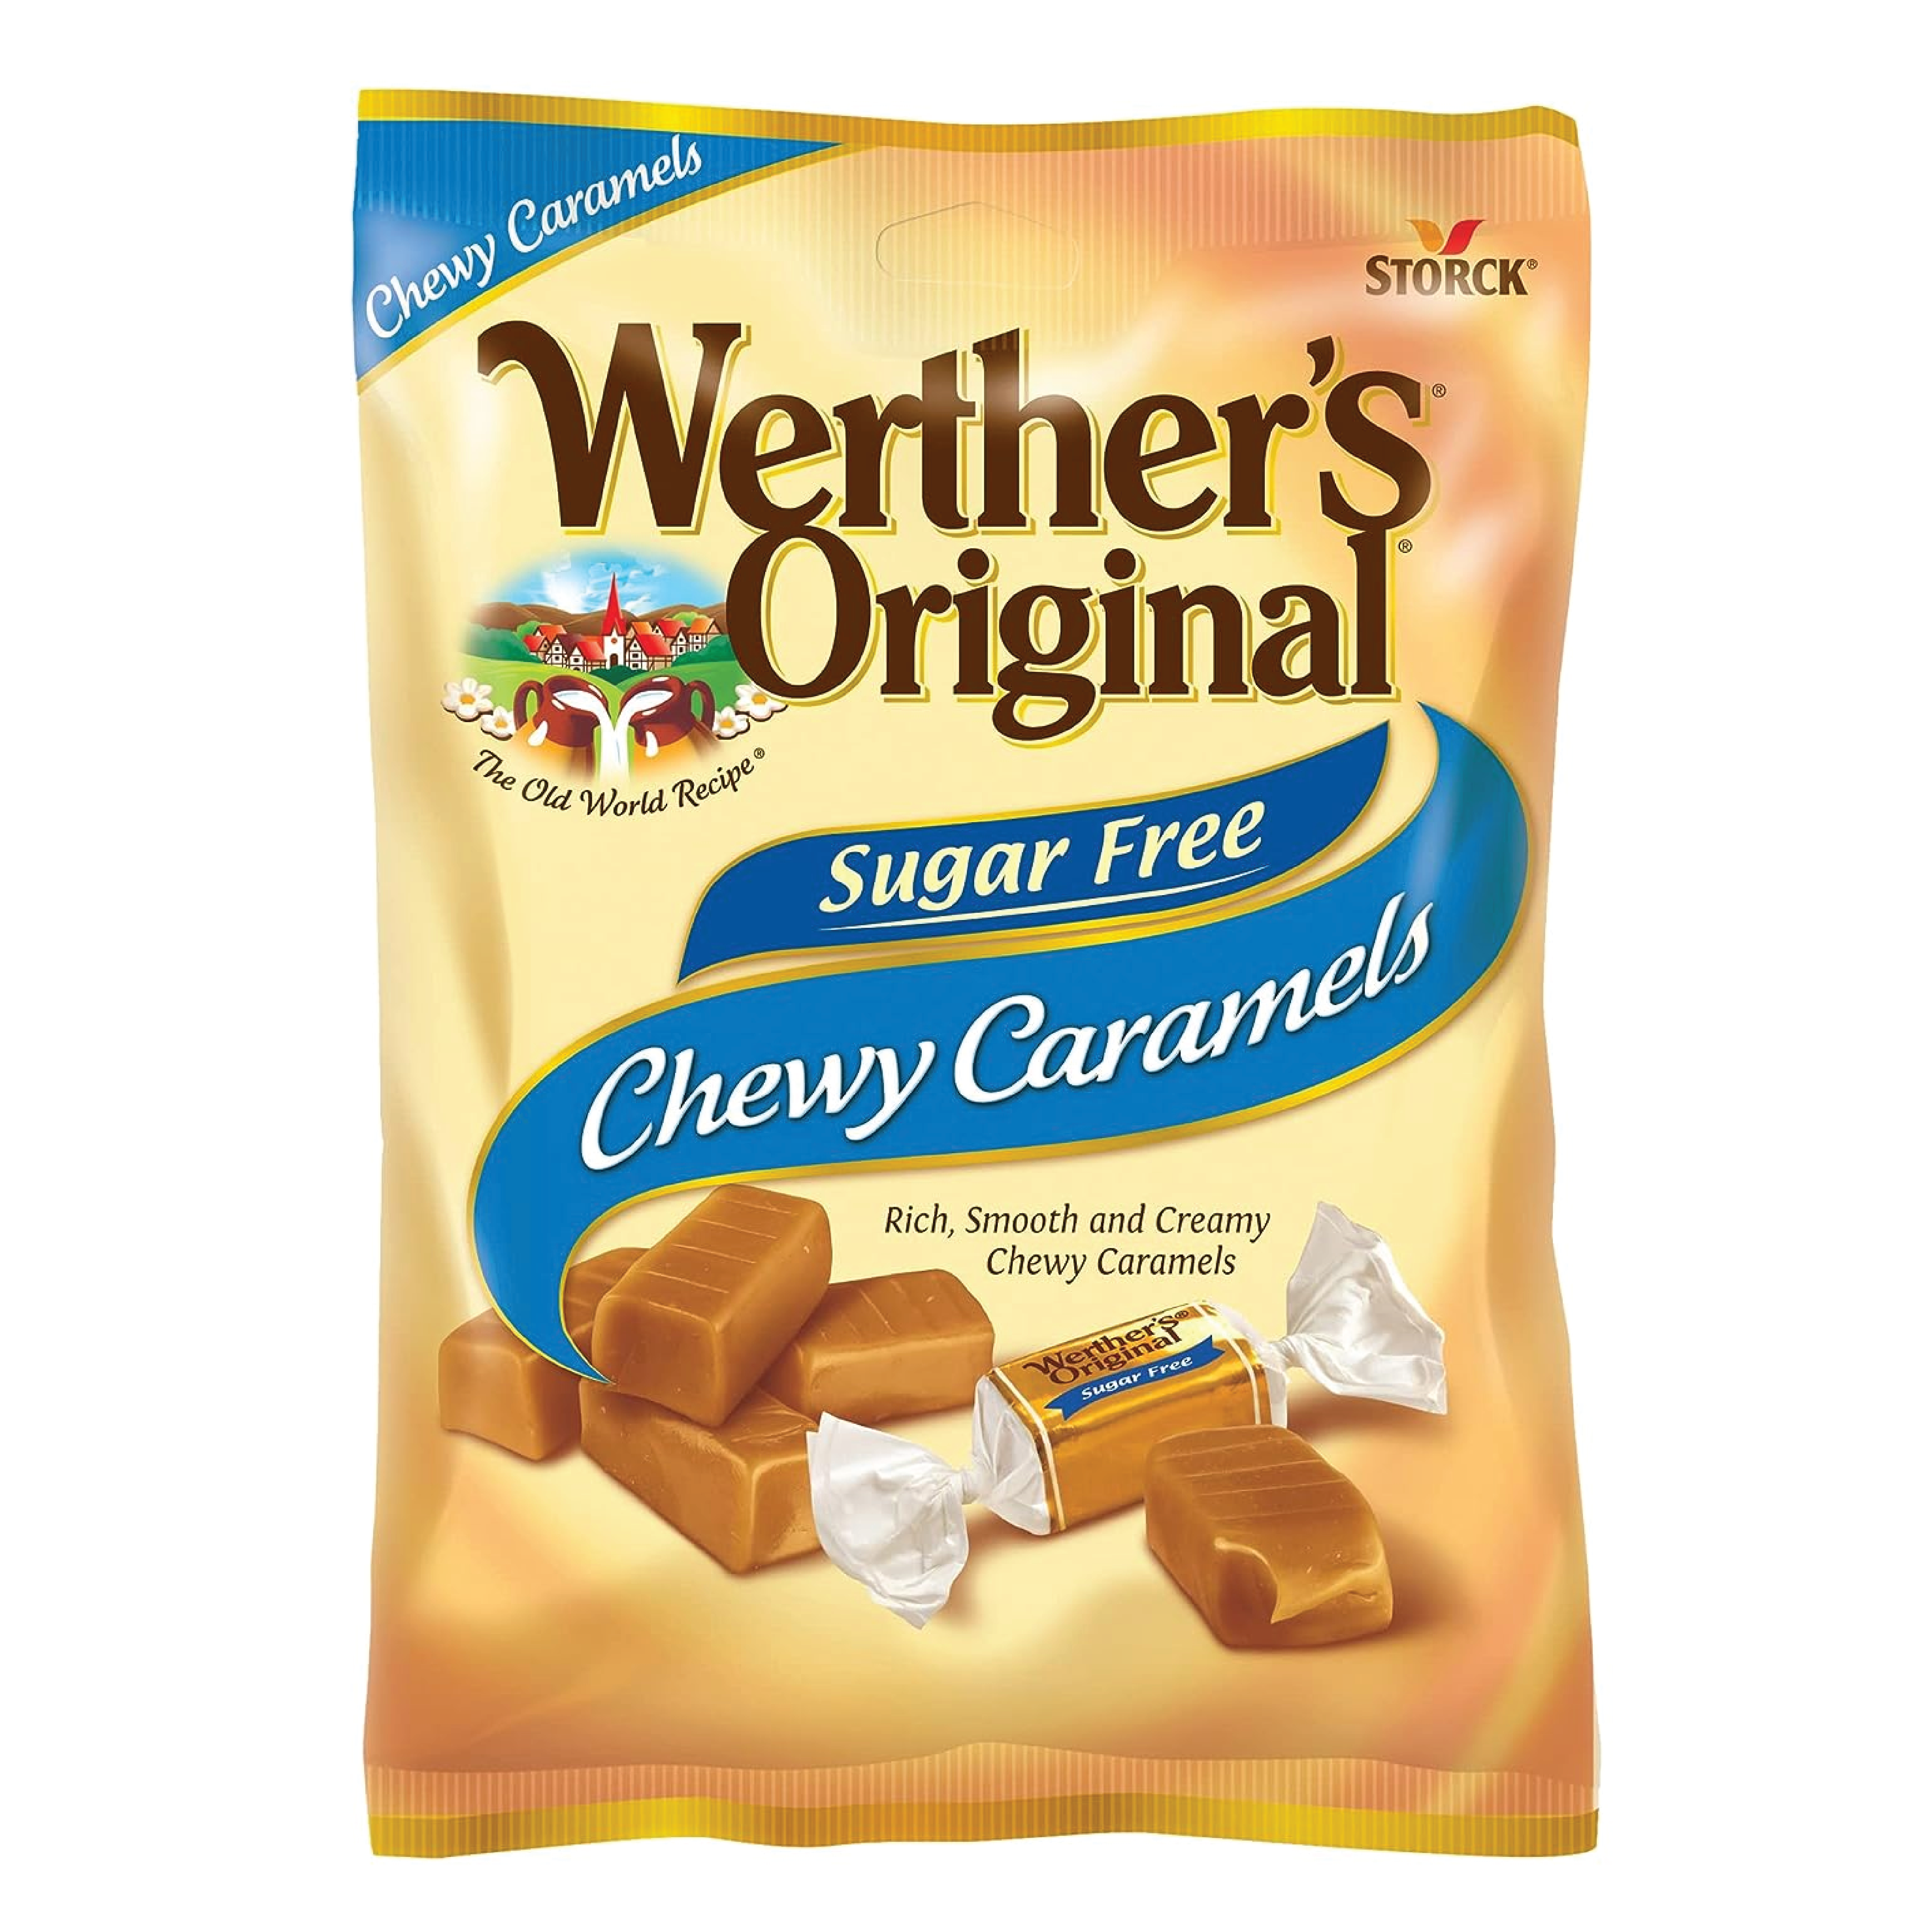 Werther's Original Sugar Free Chewy Caramels 2.75oz